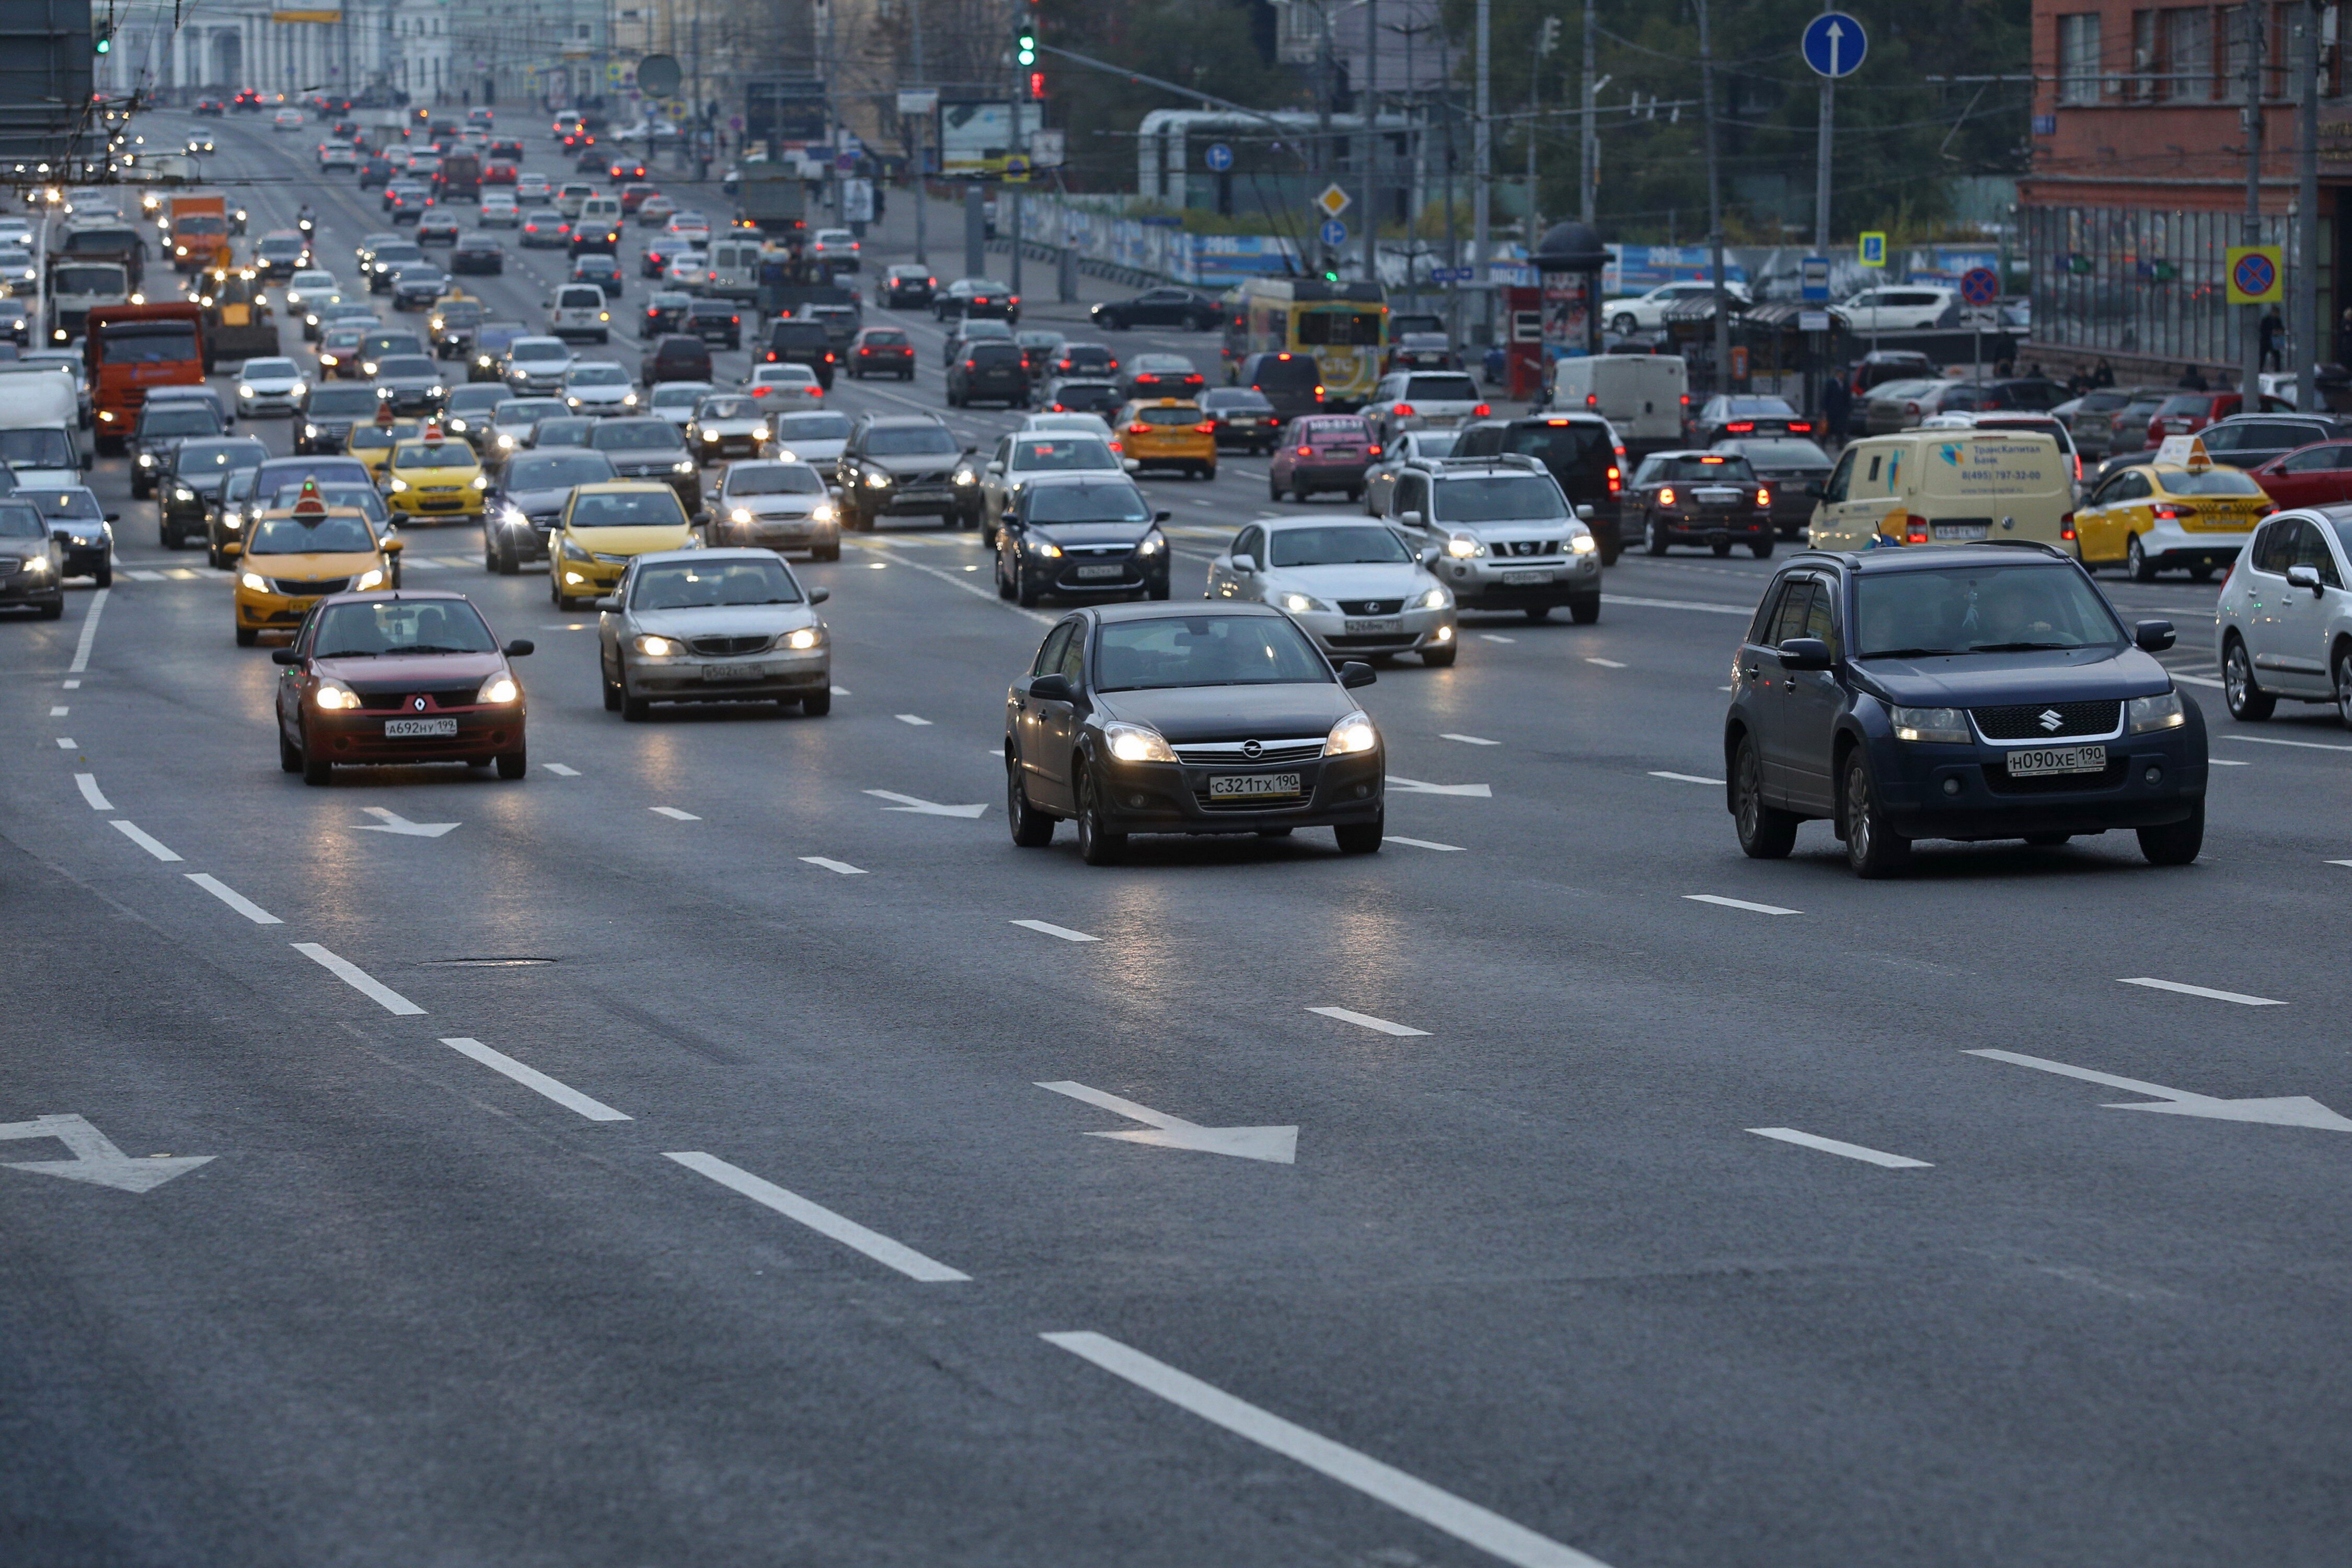 В России могут понизить нештрафуемый порог превышения скорости